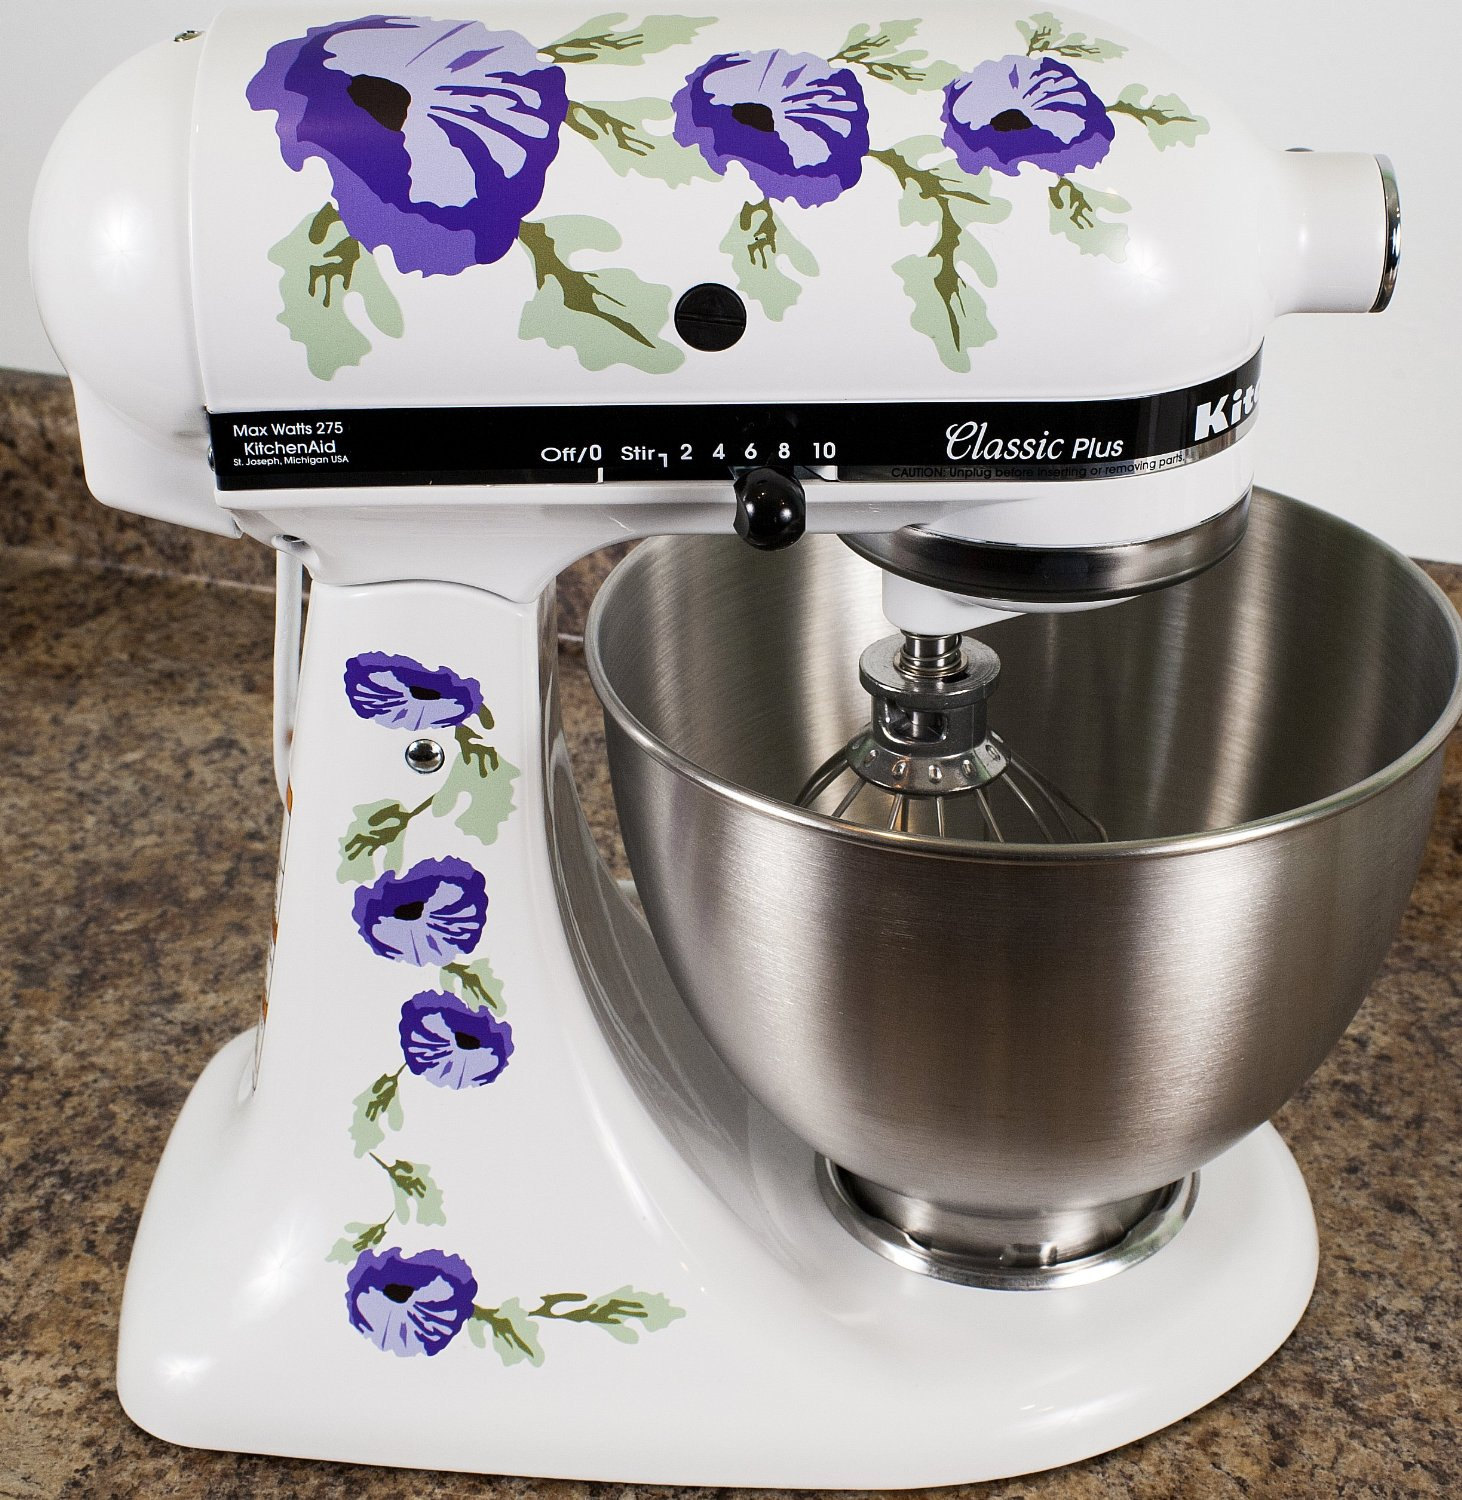 Floral Inspired Design Kitchenaid Mixer Decal Sticker Kitchen